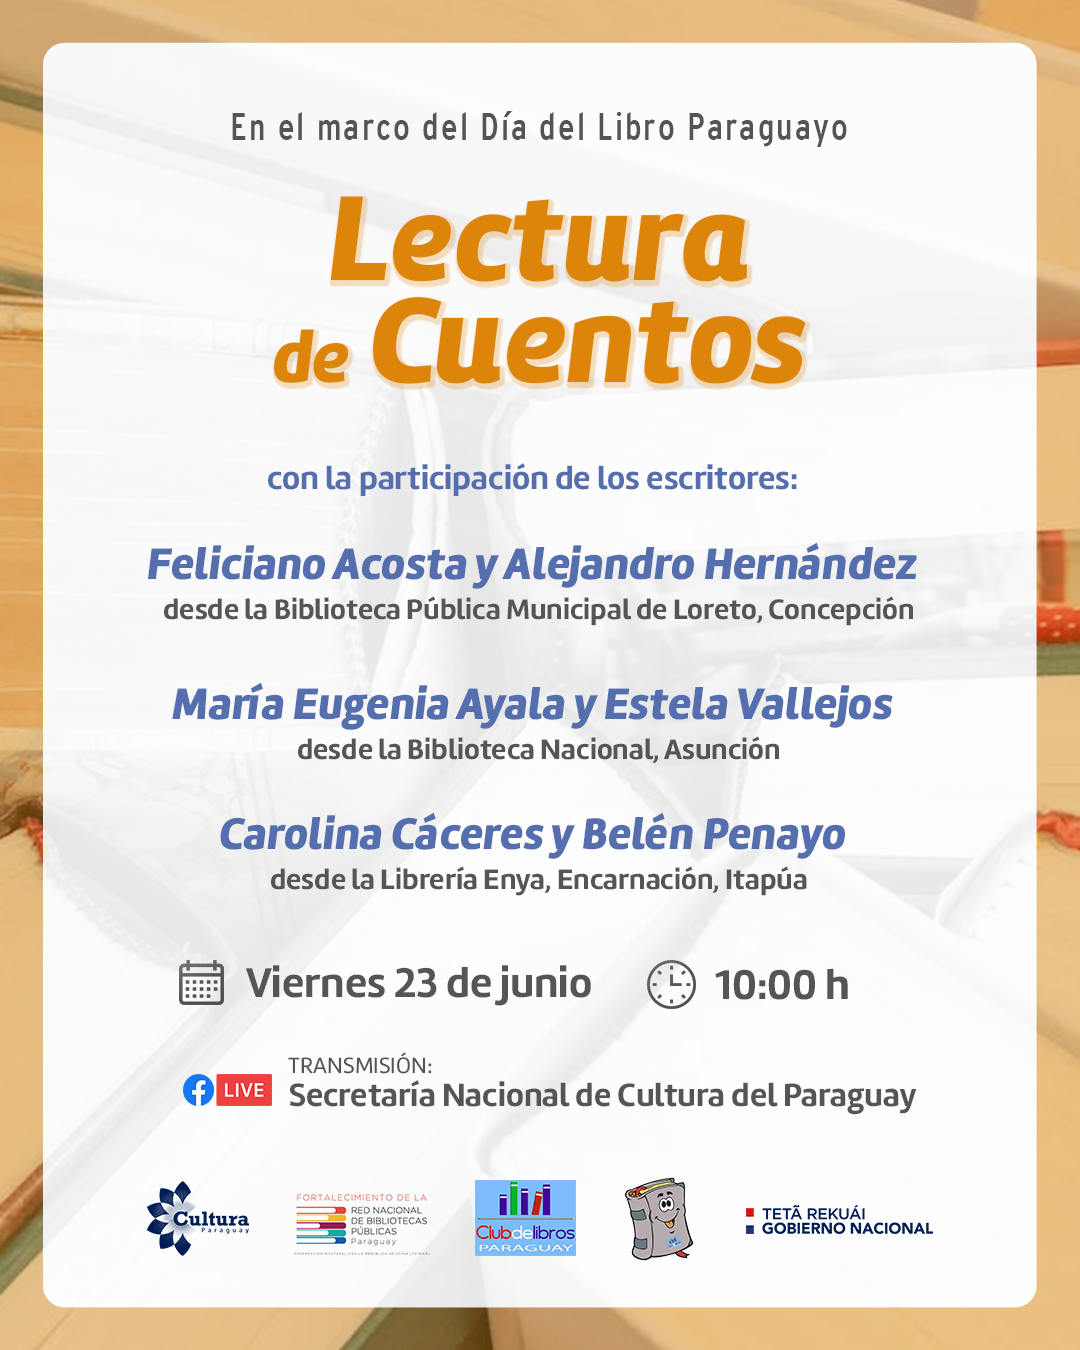 Día del libro paraguayo se celebrará con lectura de cuentos y donación de libros imagen